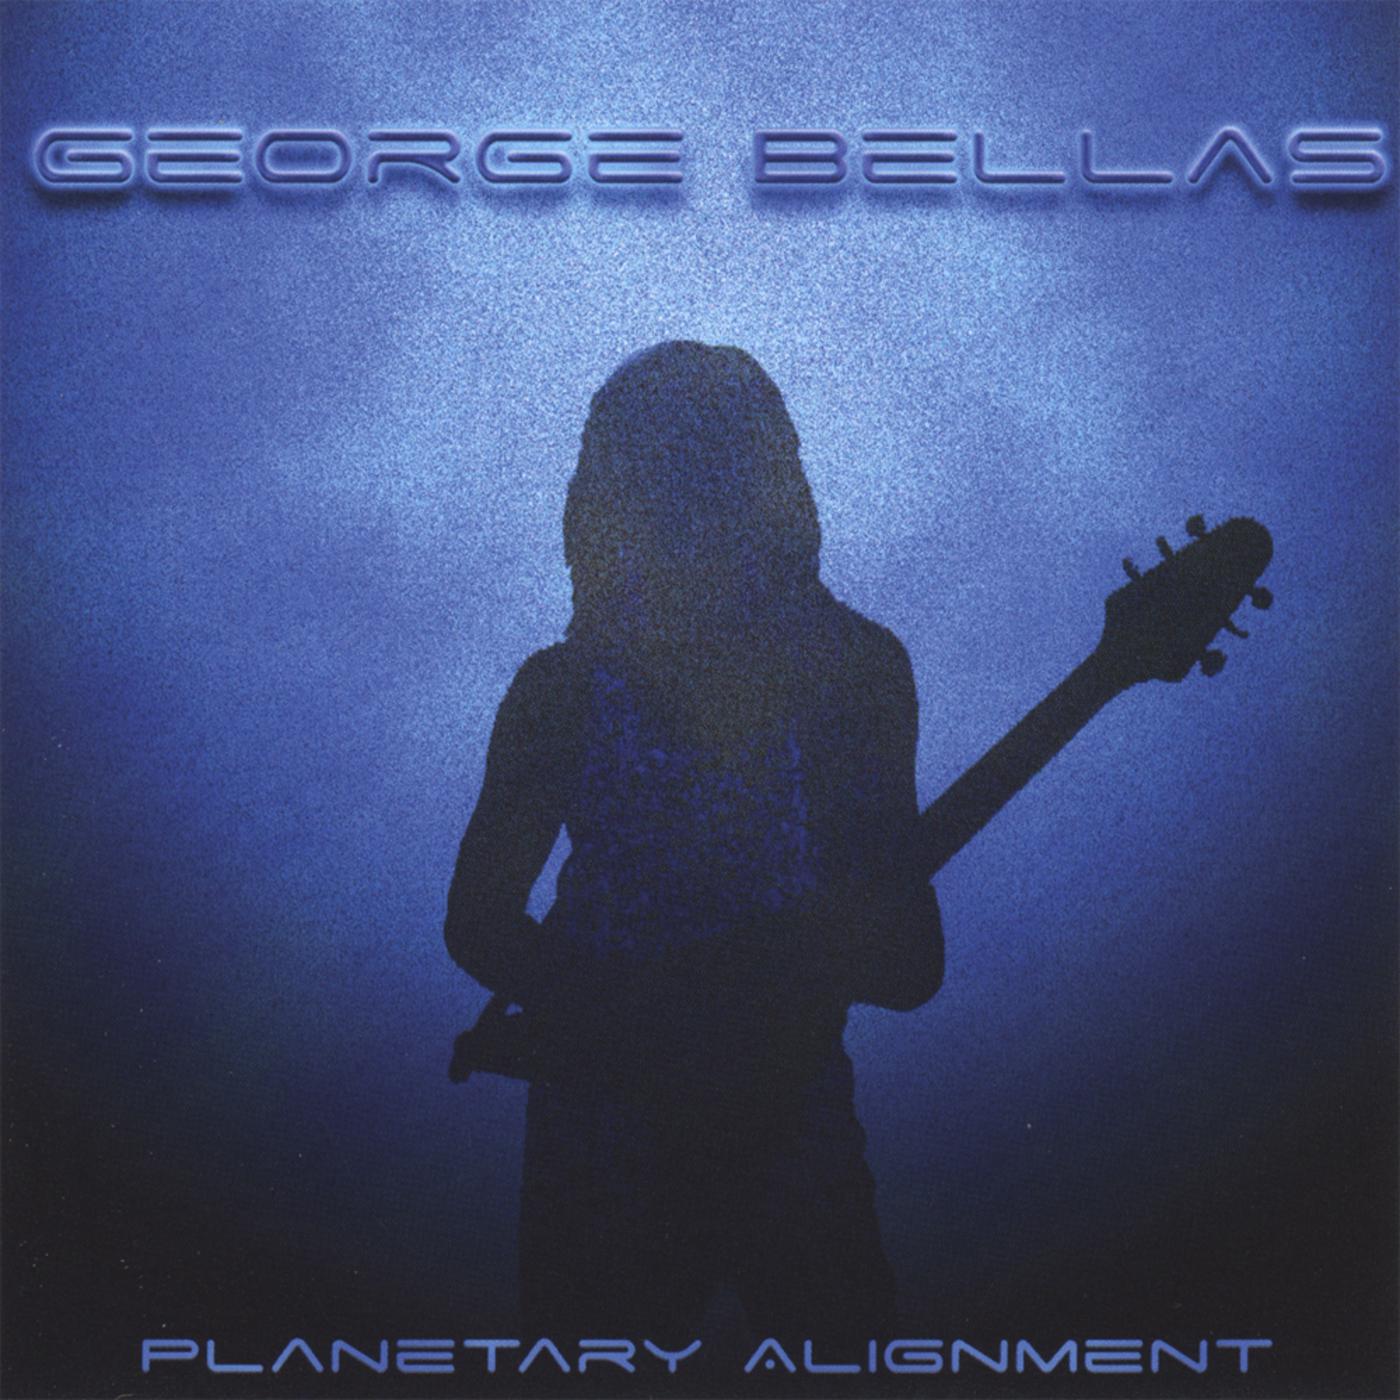 George Bellas - Encoded In Light